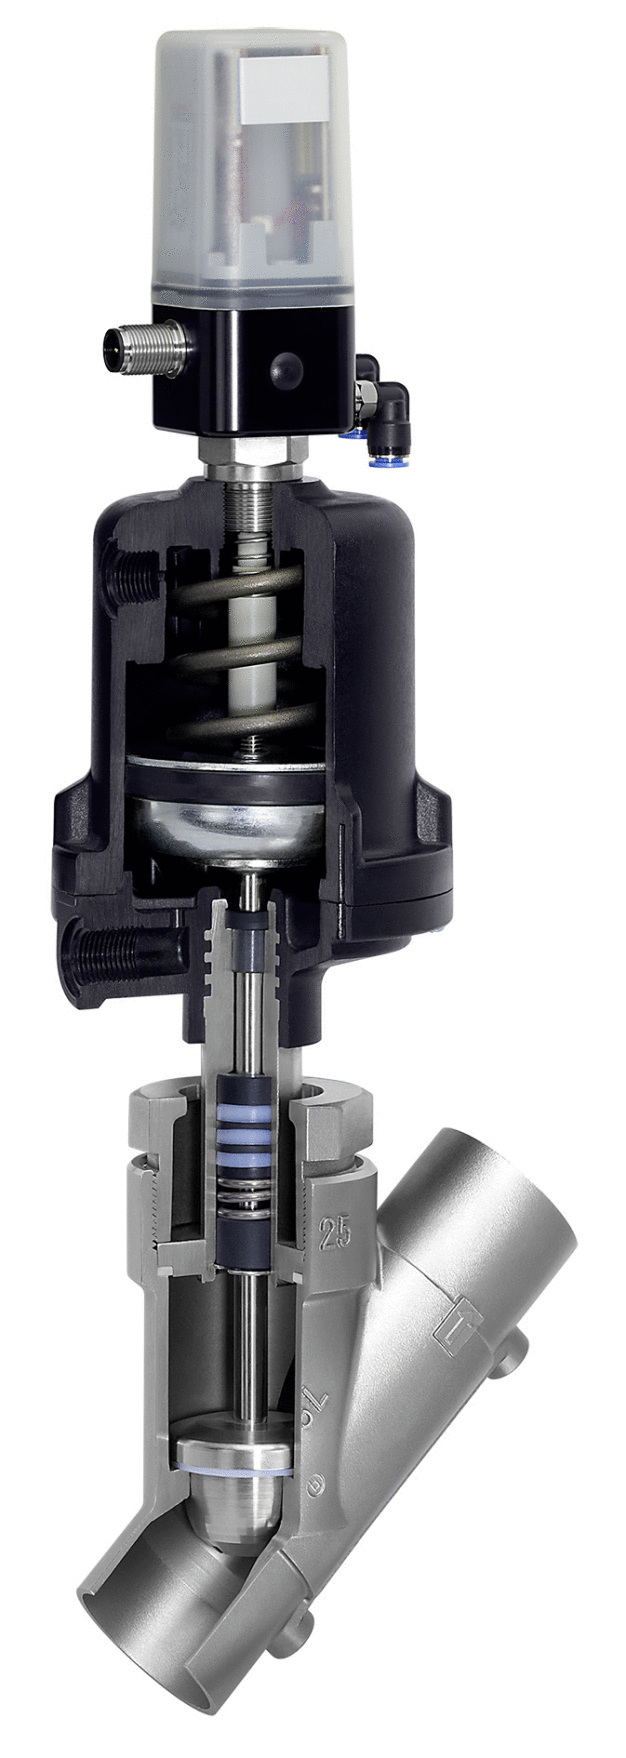 Das Regelventil GEMÜ 554 ist dank den schwer entflammbaren PTFE-Dichtungen bestens geeignet für Sauerstoff. / Thanks to its difficult-to-ignite PTFE seals, the GEMÜ 554 control valve is perfectly suited to oxygen applications.